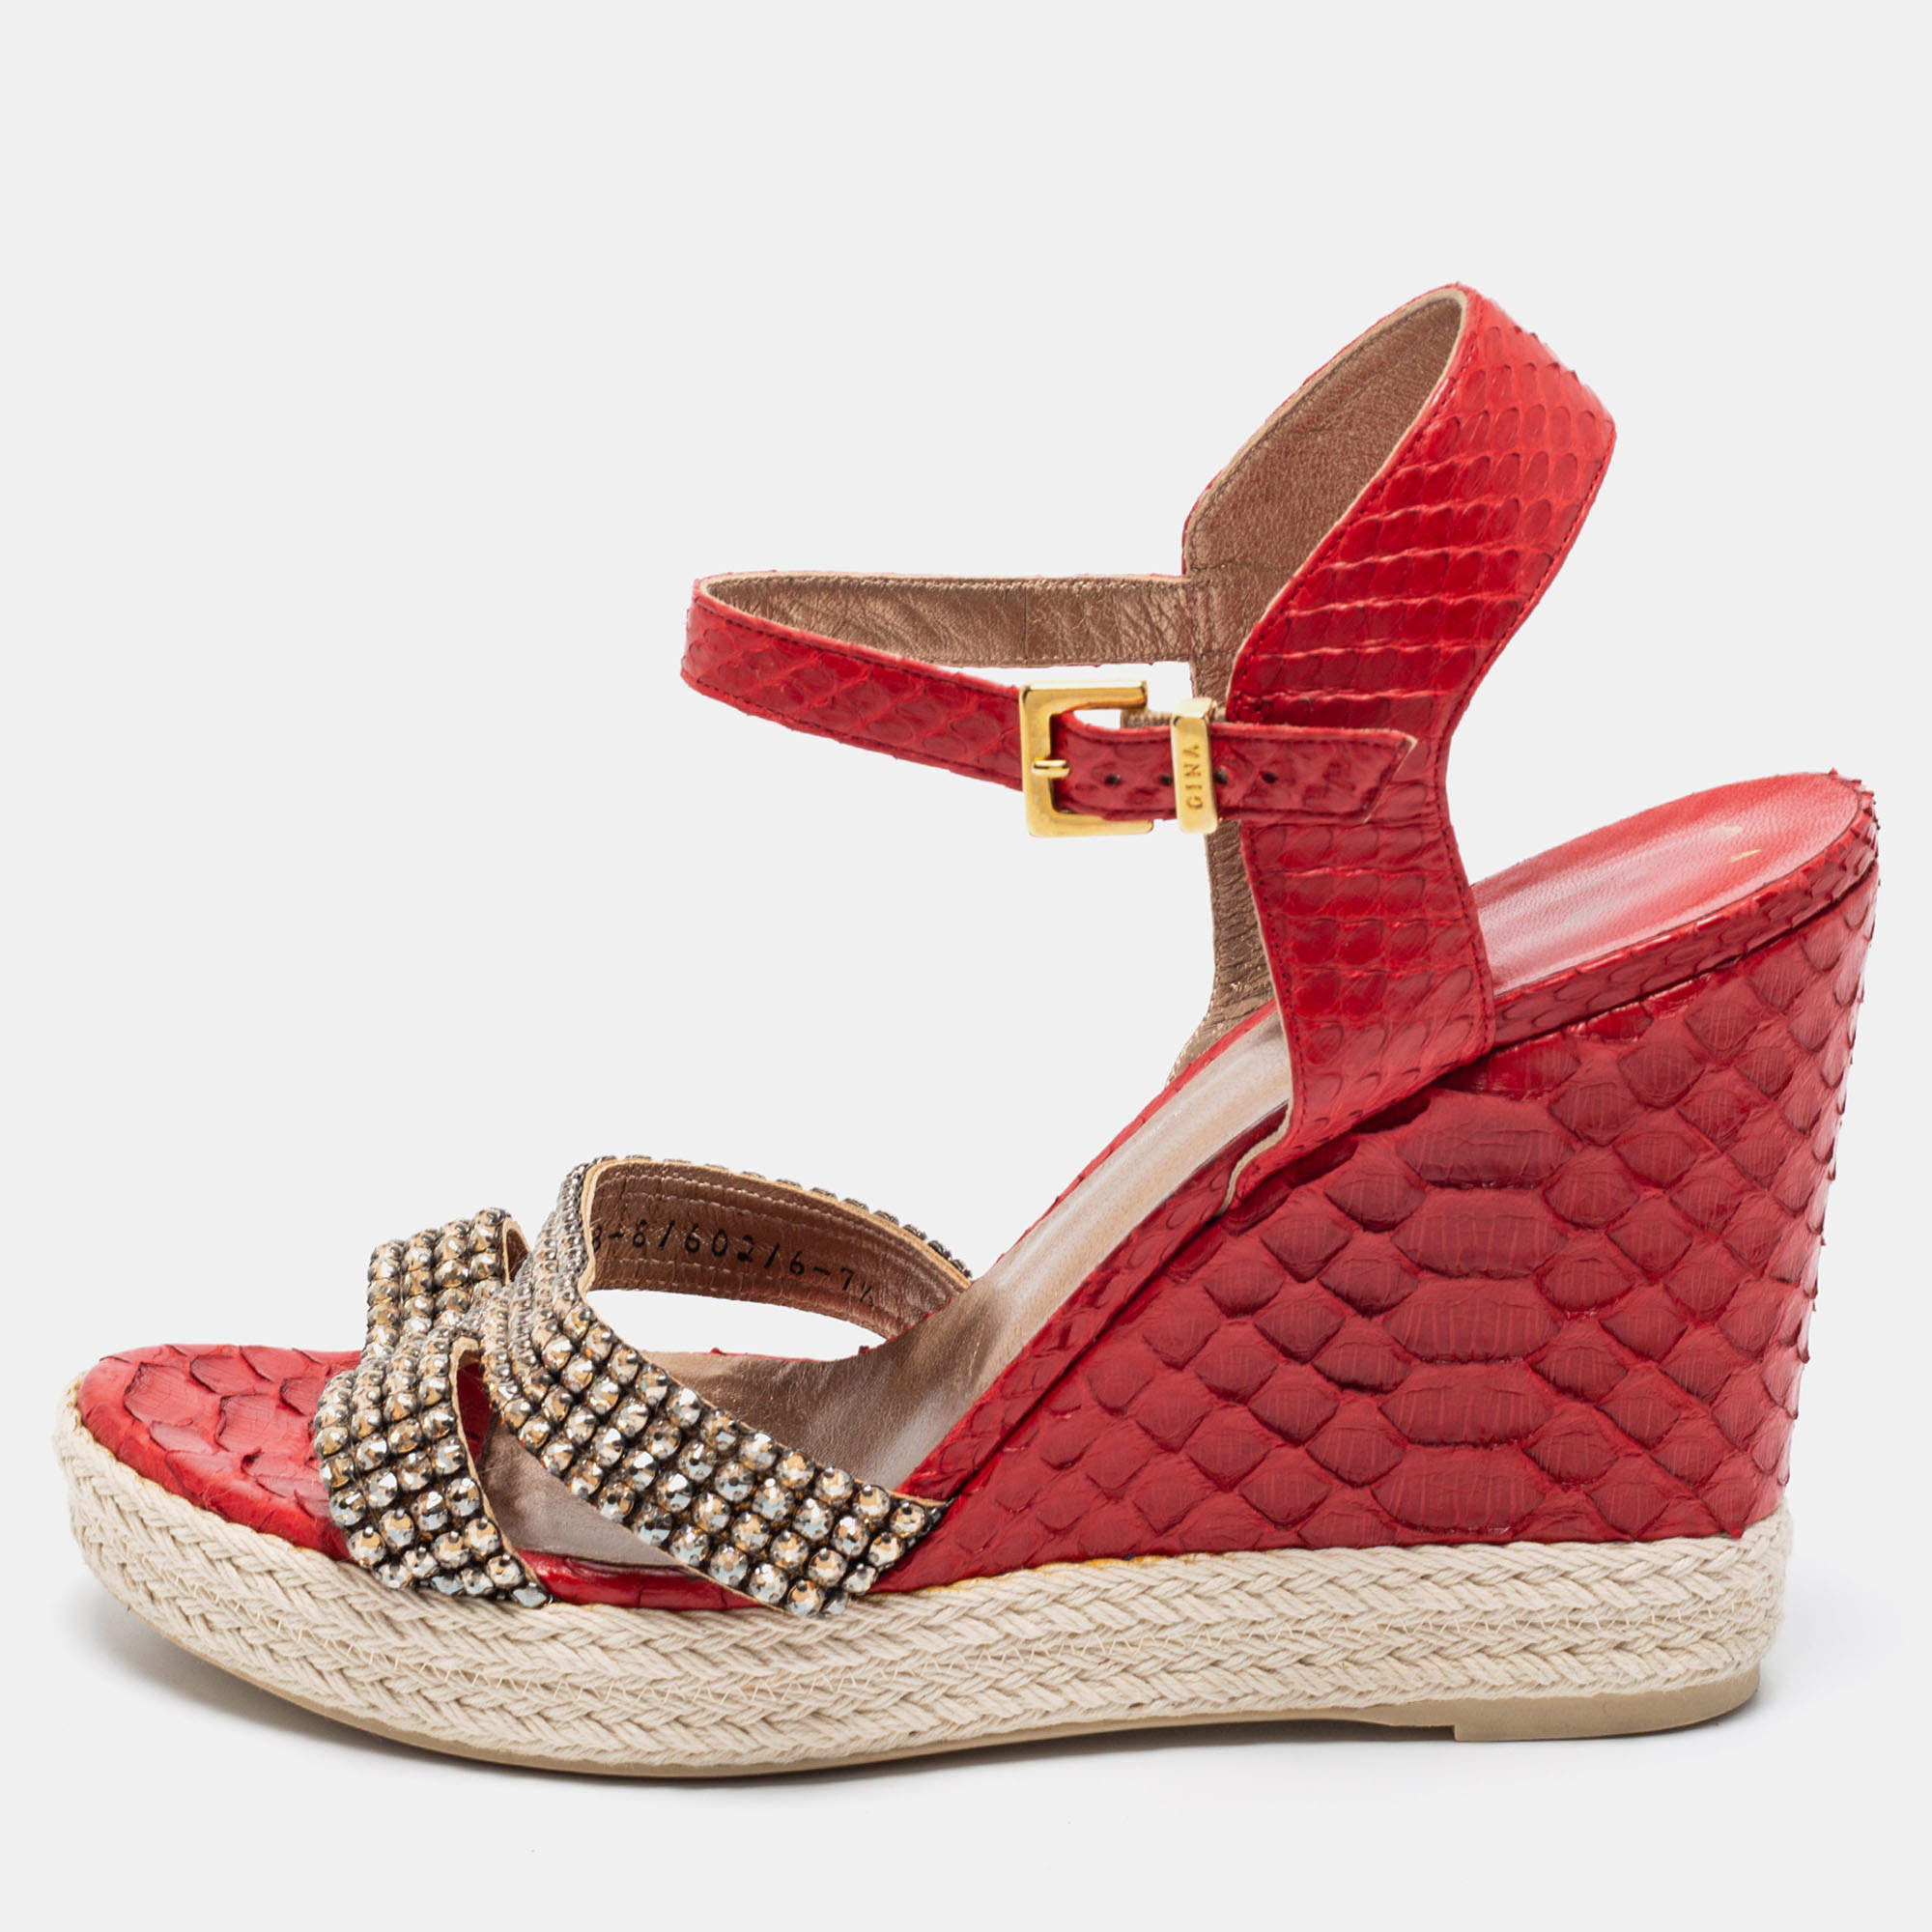 Gina Red Python Leather Crystal Embellished Wedge Platform Ankle-Strap Sandals Size 40.5